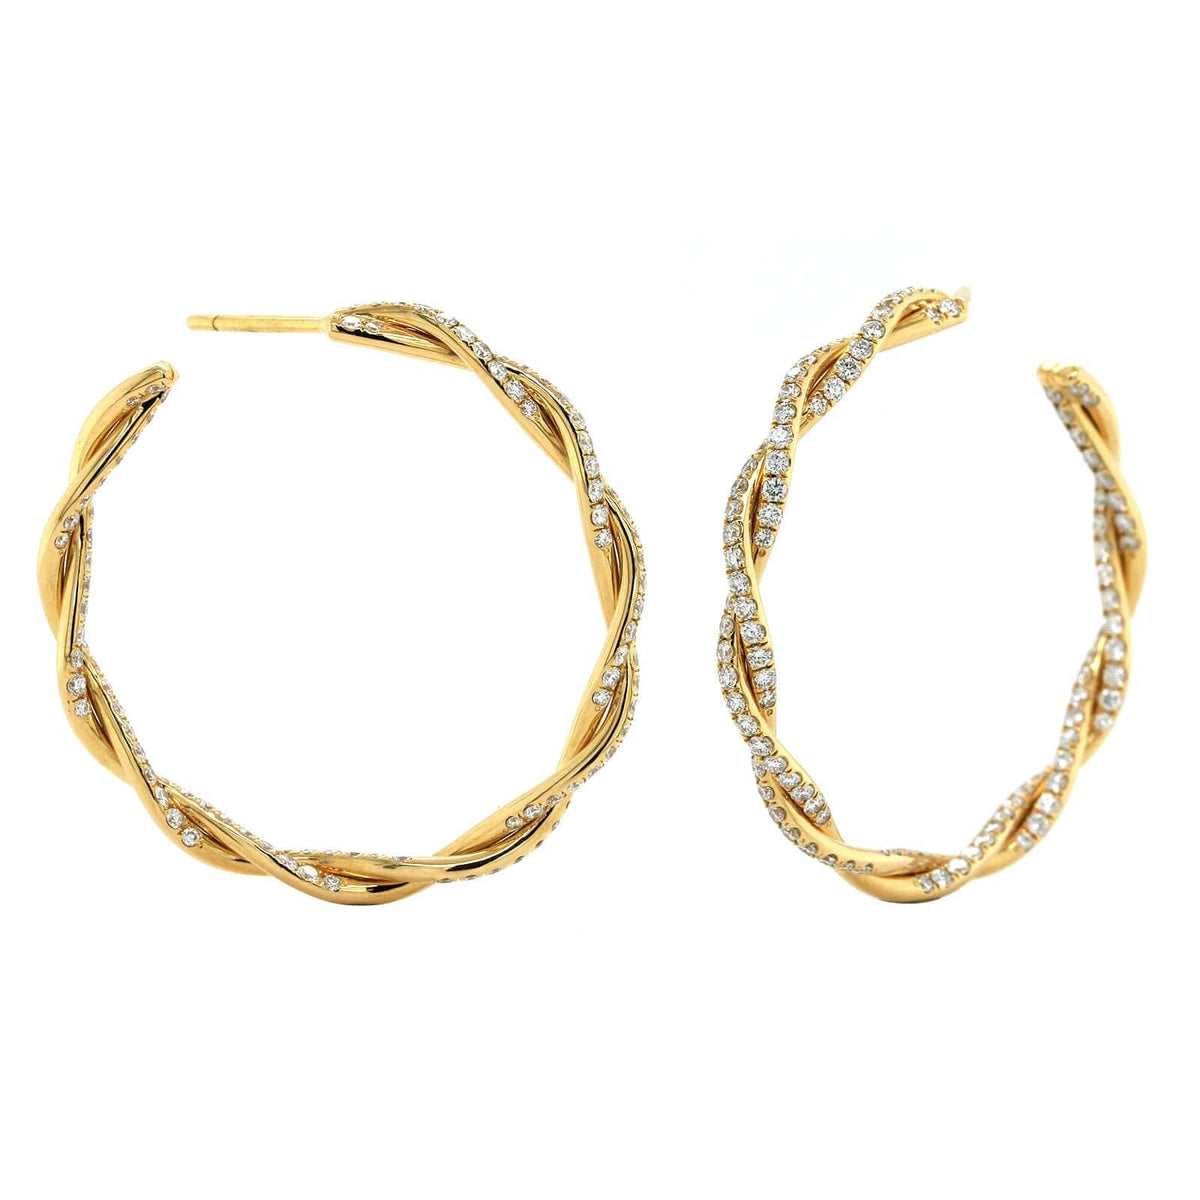 18K Yellow Gold Twist Diamond Hoop Earrings, Long's Jewelers